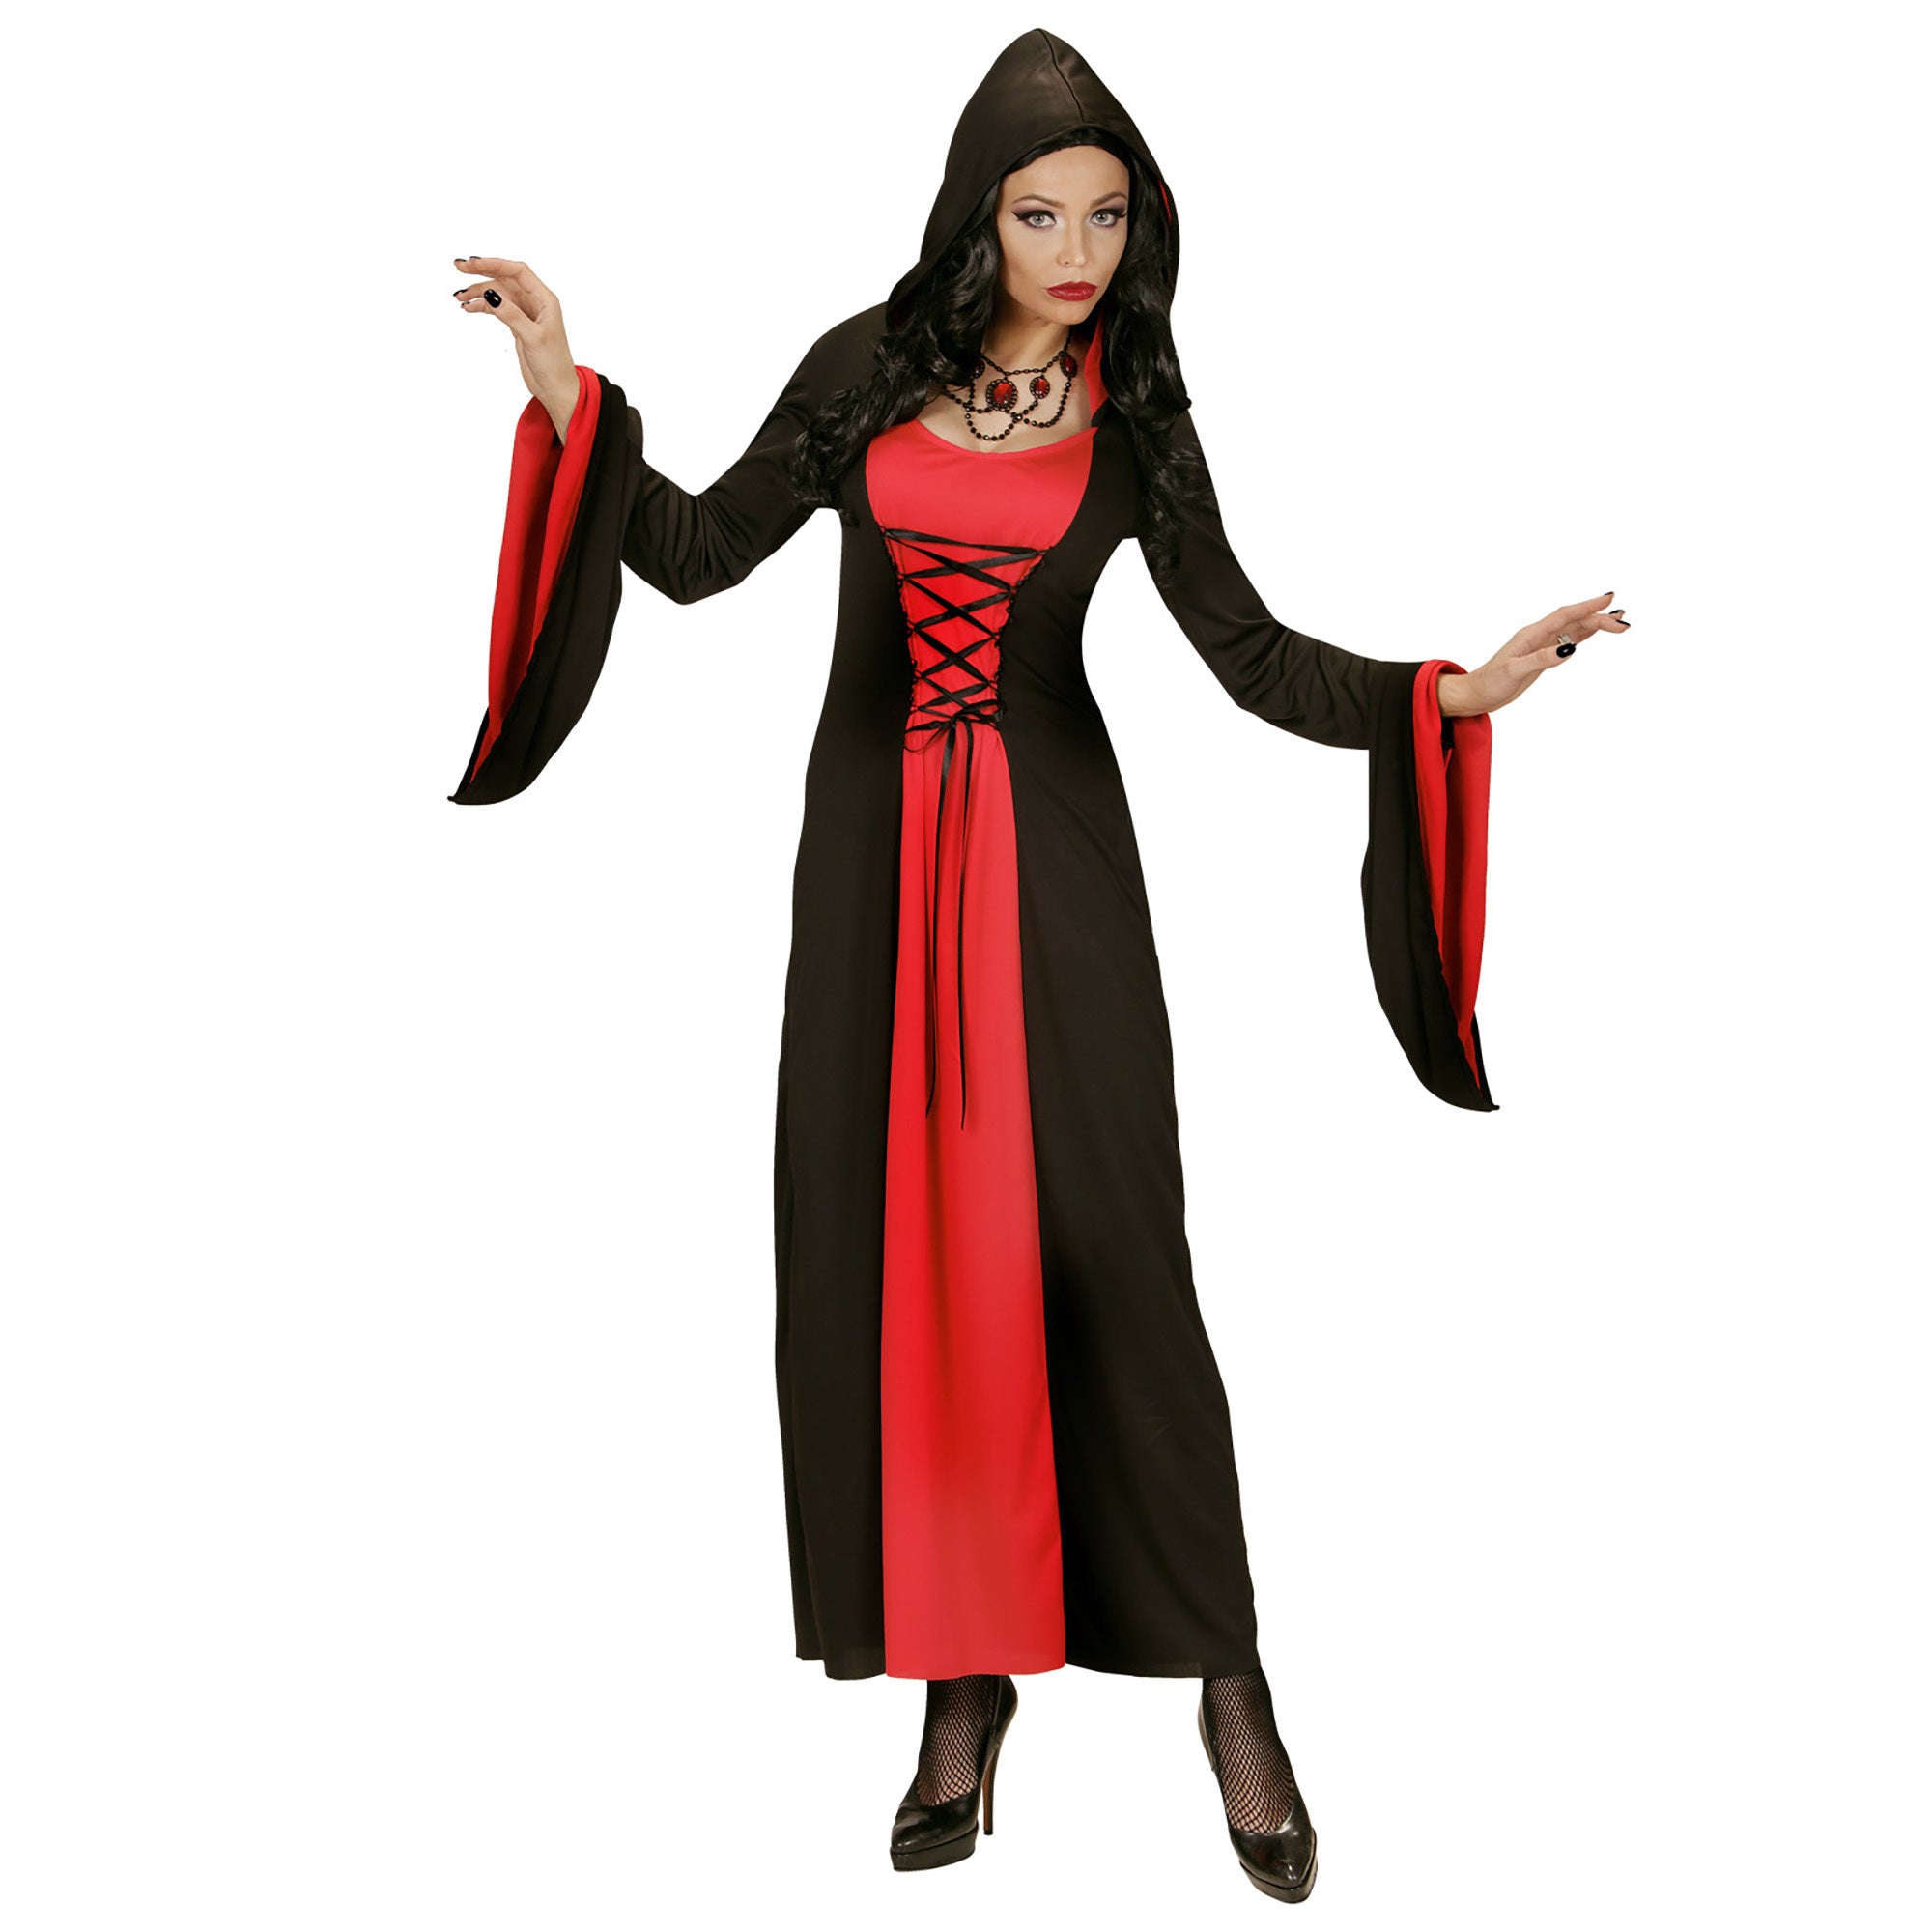 "Rood en zwart gravin kostuum met capuchon voor vrouwen - Verkleedkleding - Small"